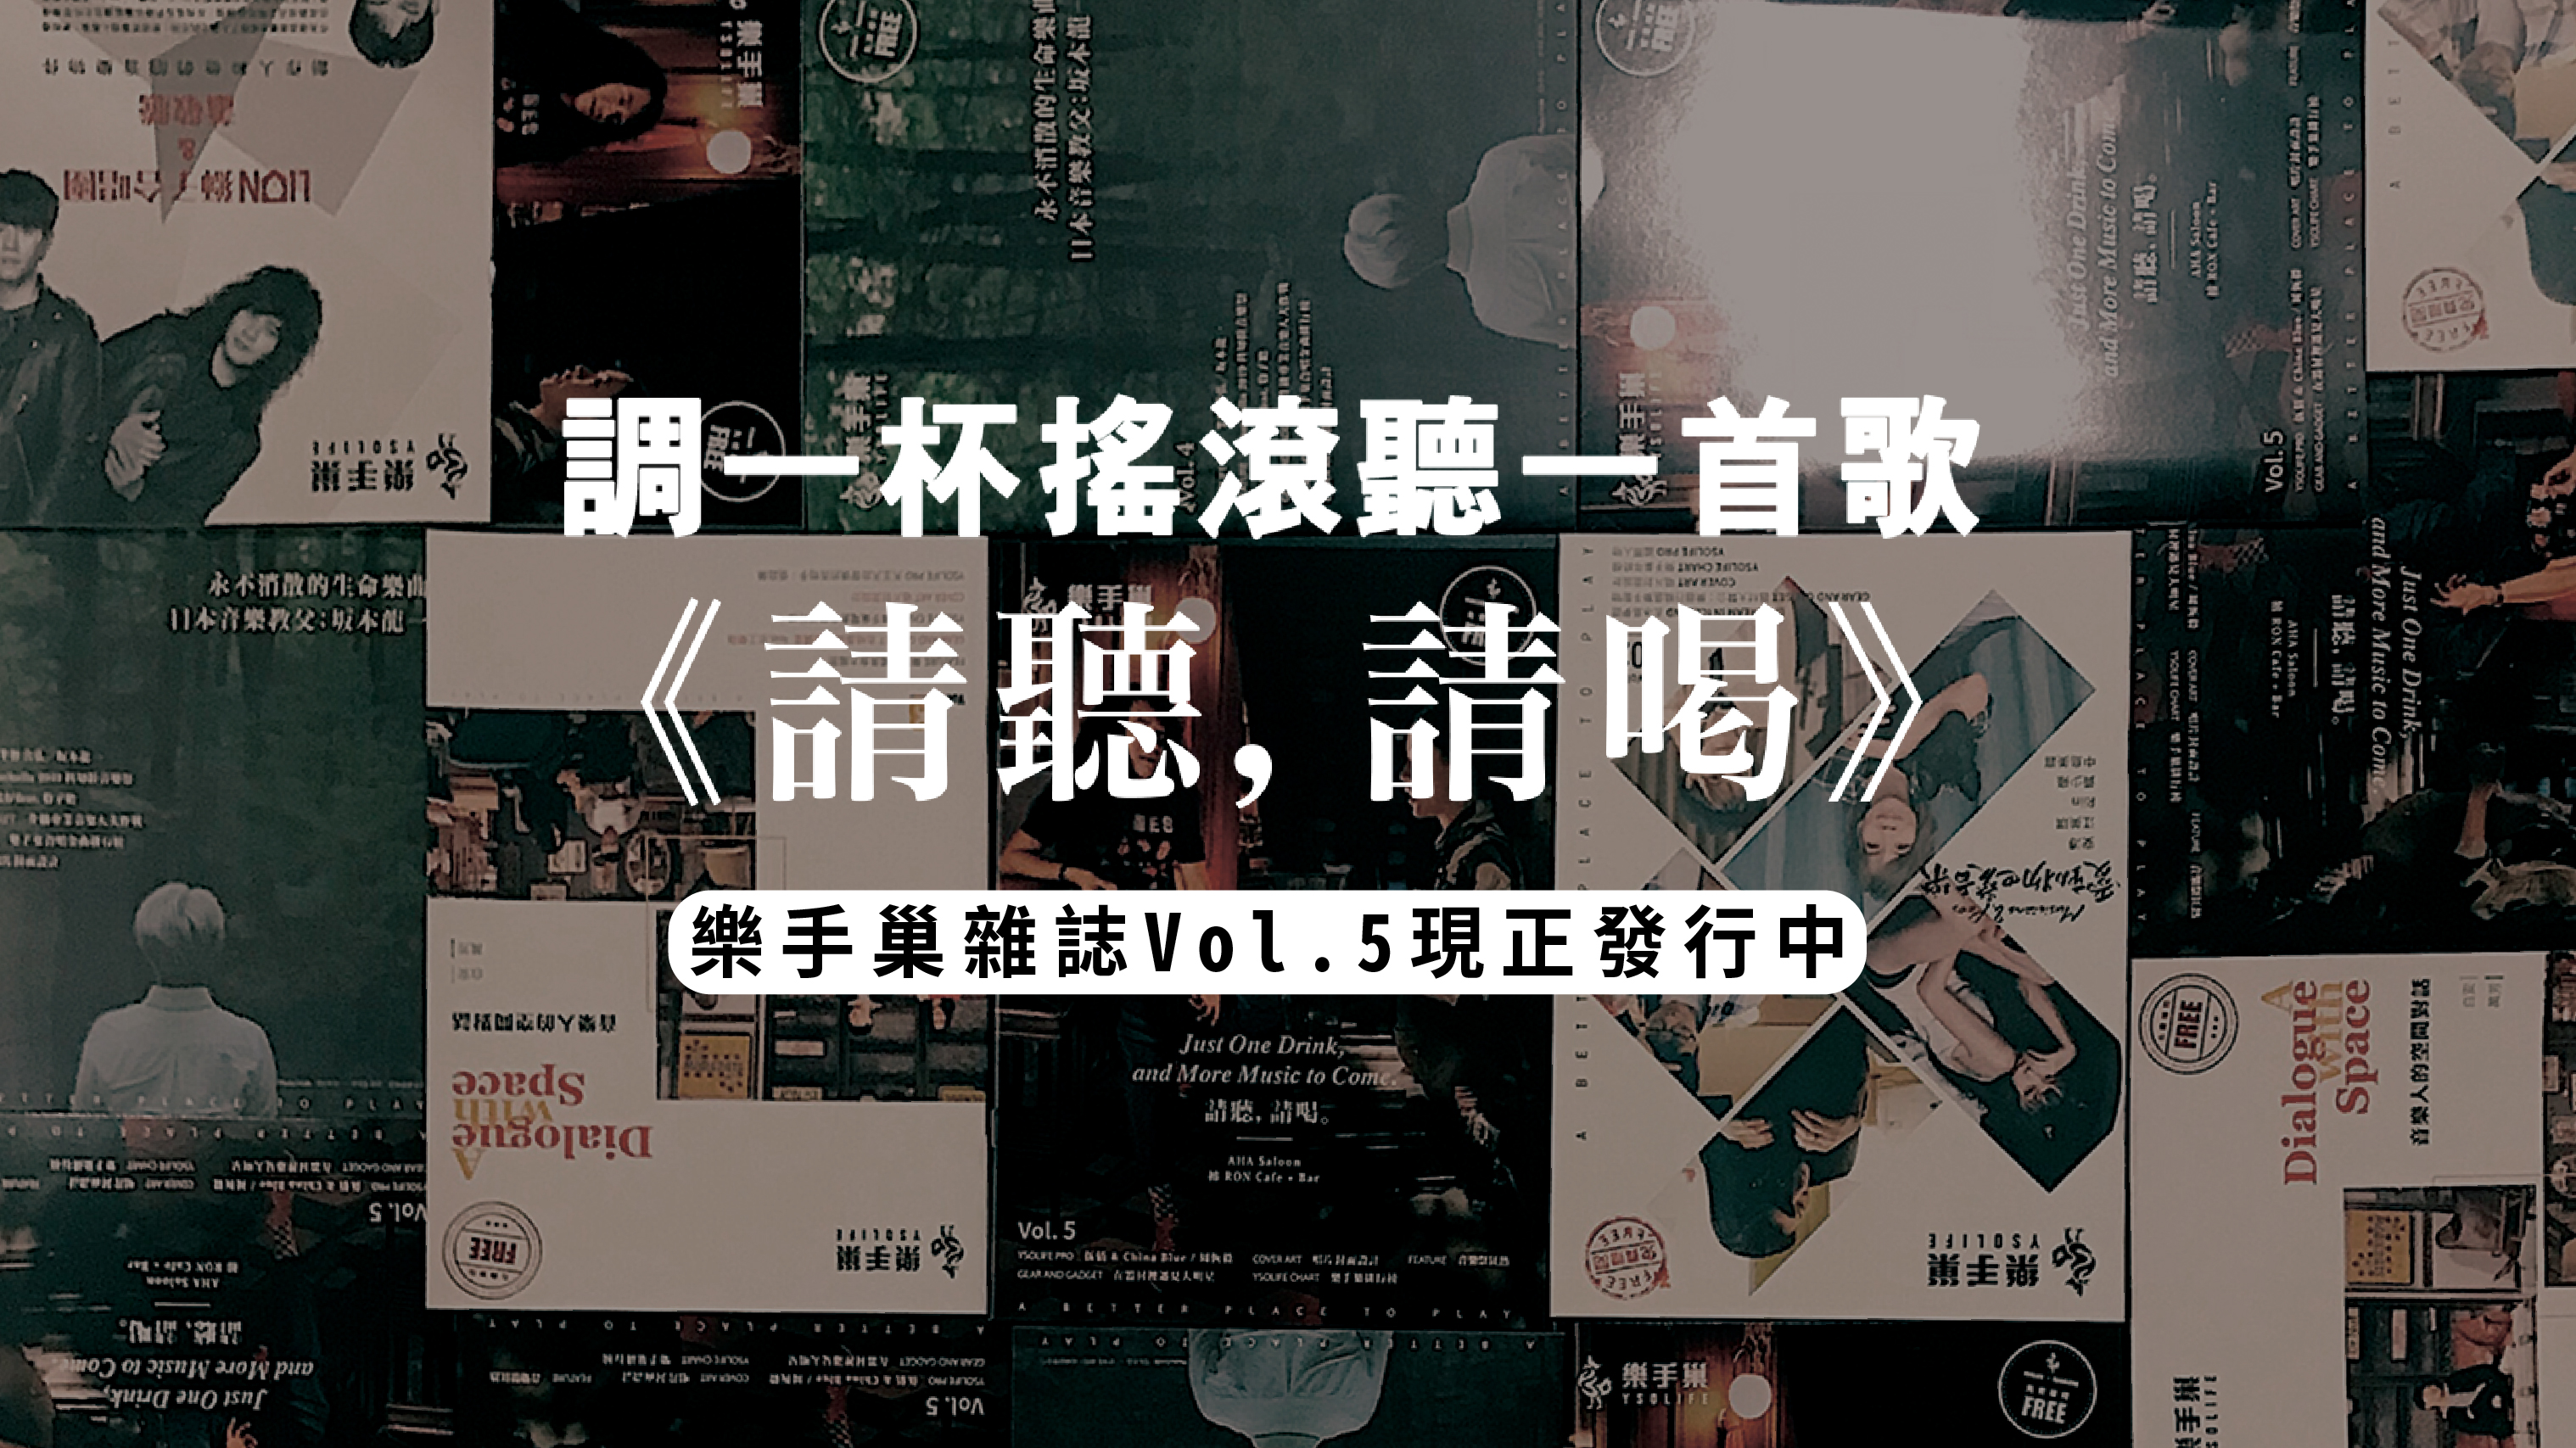 樂手巢雜誌Vol.5《請聽，請喝》現正發行中-01